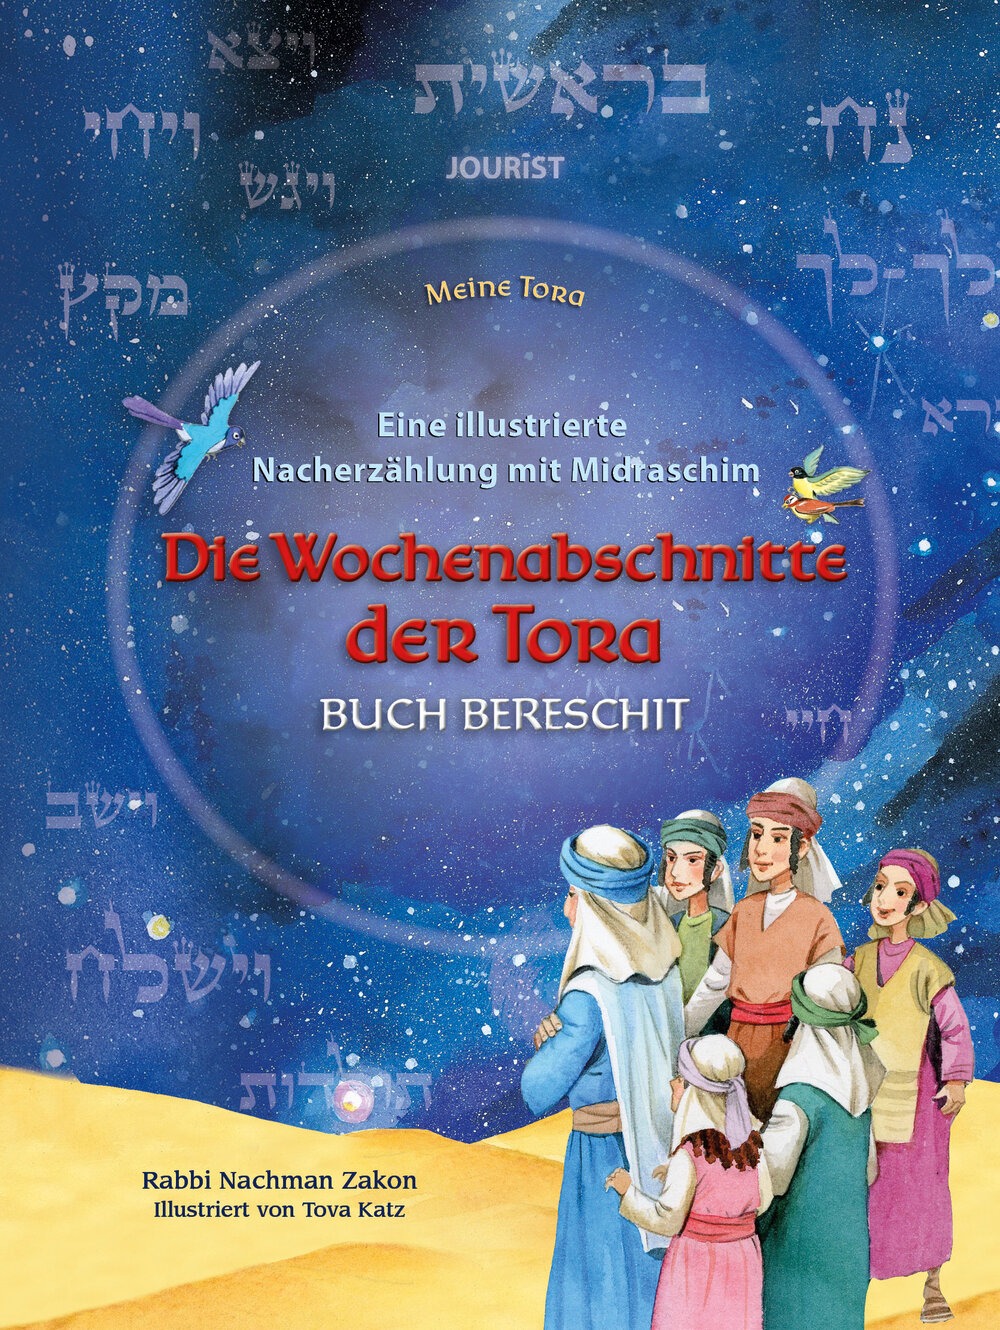 Die Wochenabschnitte der Tora. Buch Bereschit. Eine illustrierte Nacherzählung mit Midraschim.